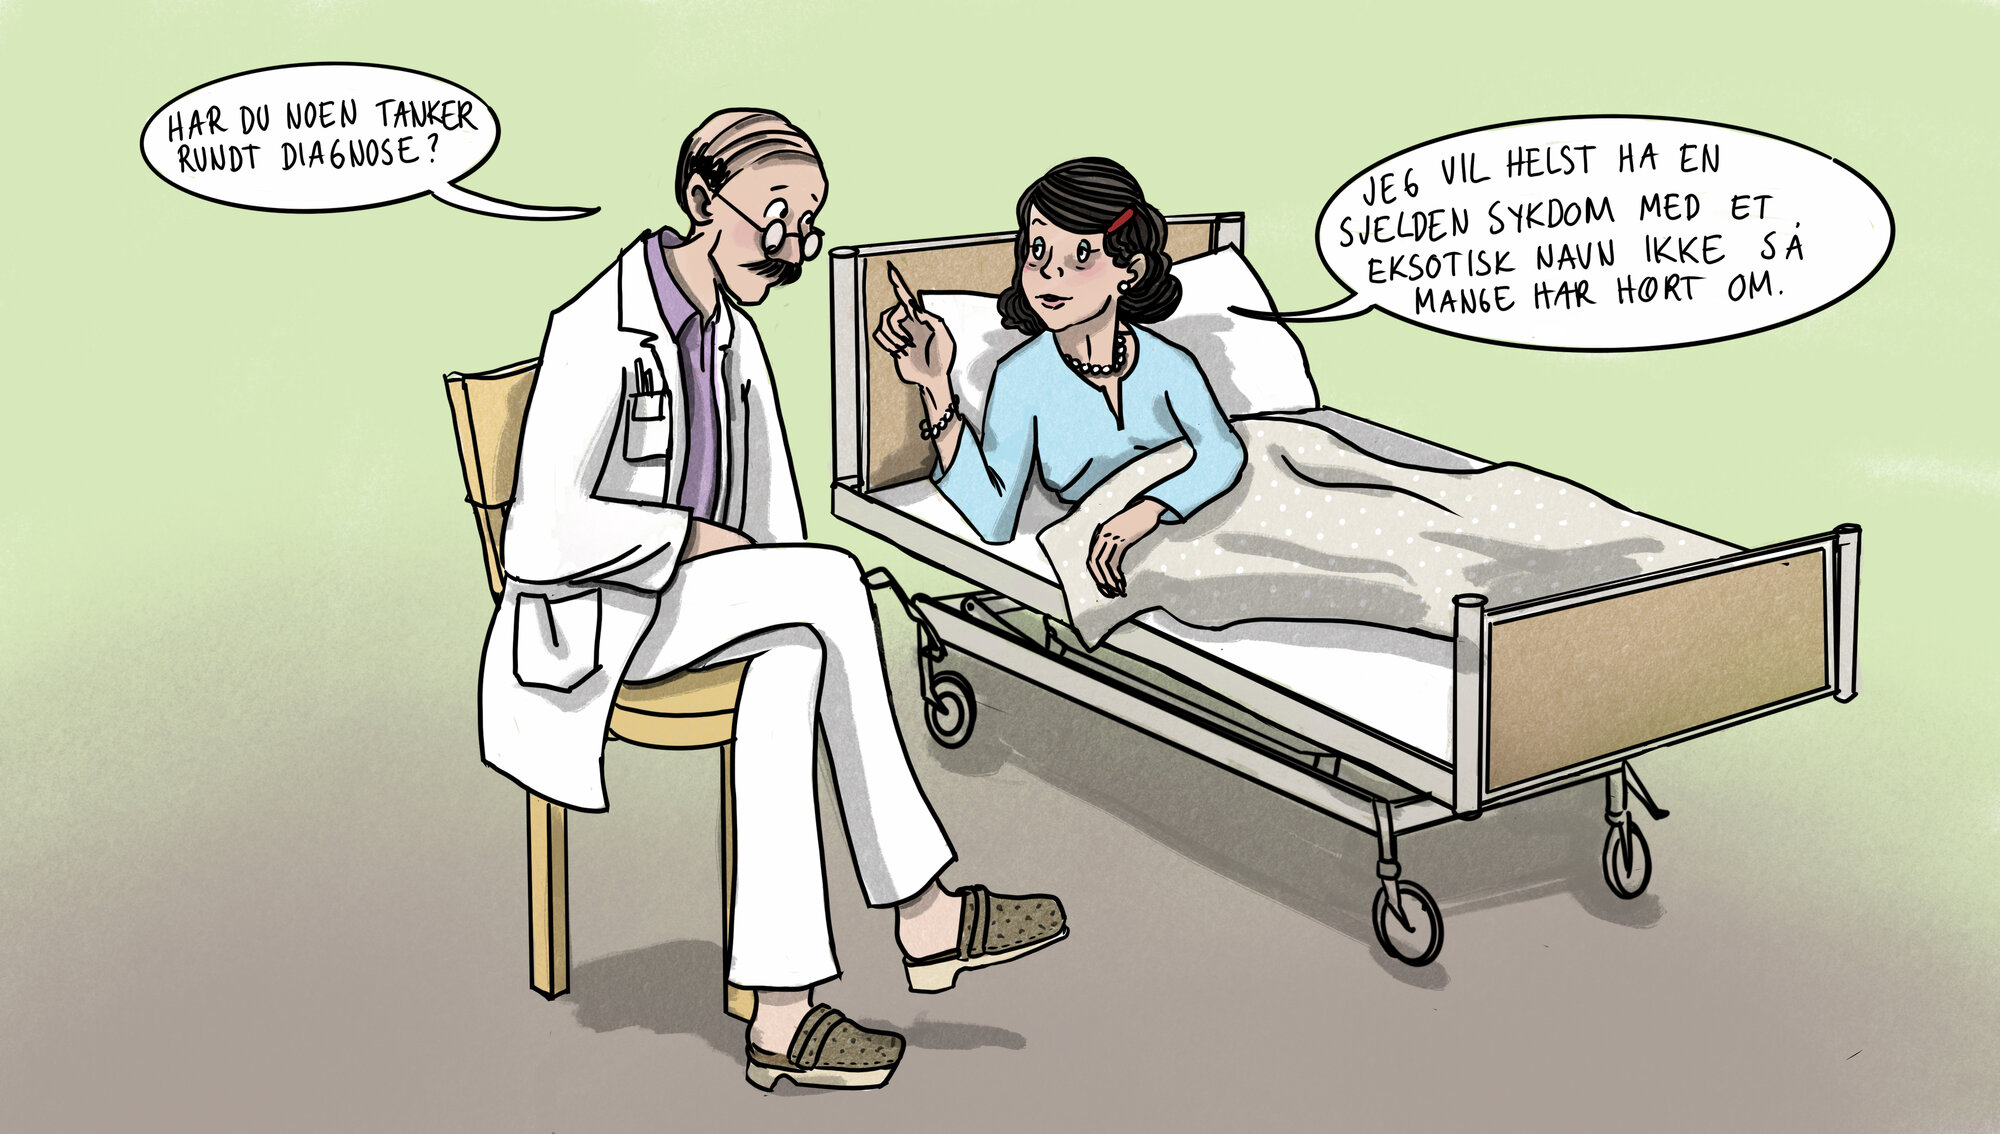 Illustrasjonen viser en lege som sitter ved pasienten i senga. Han sier: &quot;Har du noen tanker rundt diagnose?&quot;. Hun svarer: &quot;Jeg vil helst ha en sjelden sykdom med et eksotisk navn ikke så mange har hørt om.&quot;